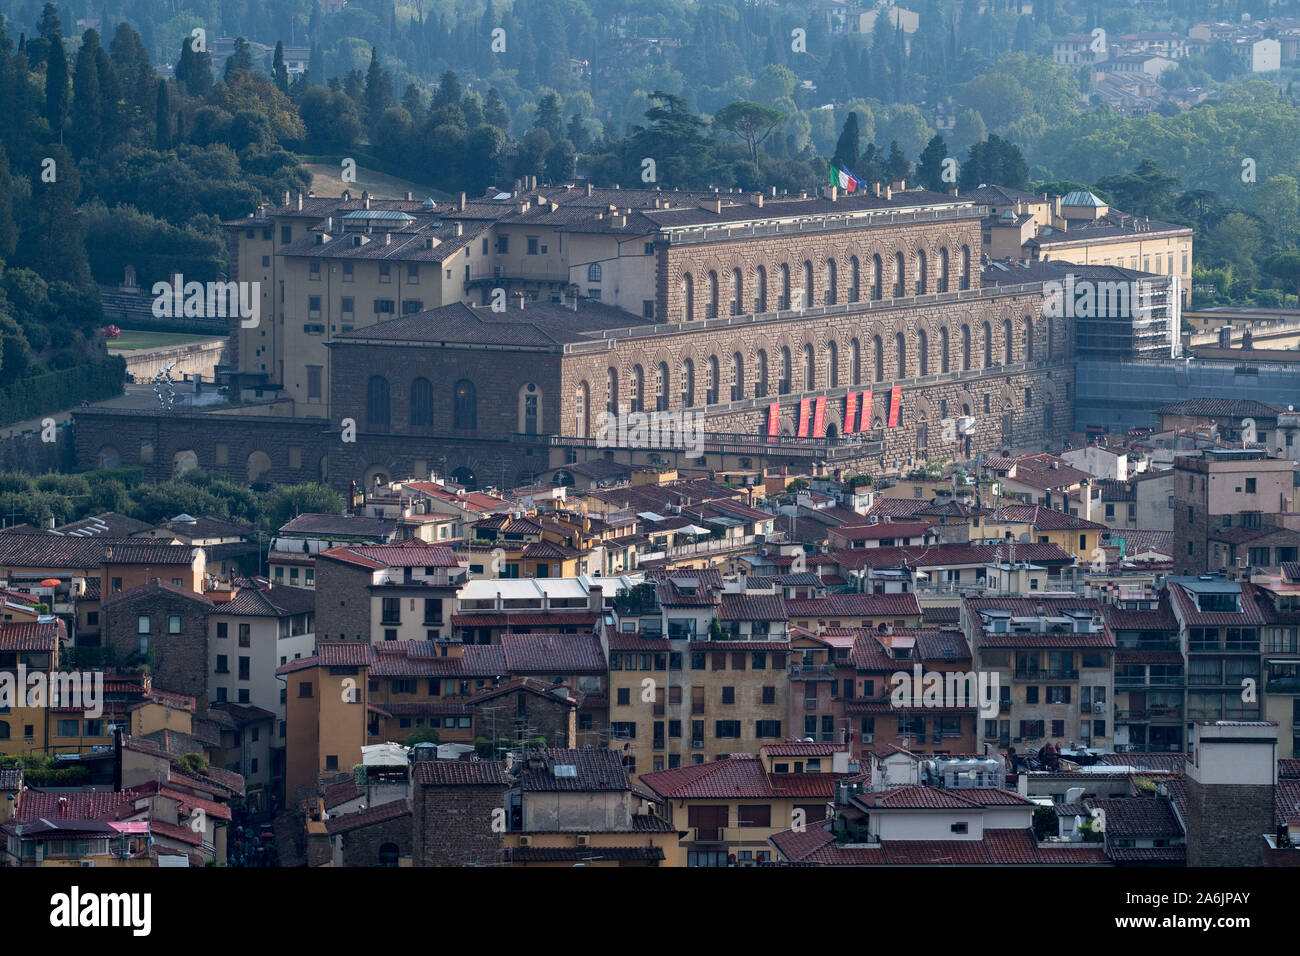 Rinascimentale Palazzo Pitti (Palazzo Pitti) ricostruito nel XVI secolo per la famiglia dei Medici nel centro storico di Firenze elencati dall'UNESCO Patrimonio dell'umanità. Firen Foto Stock